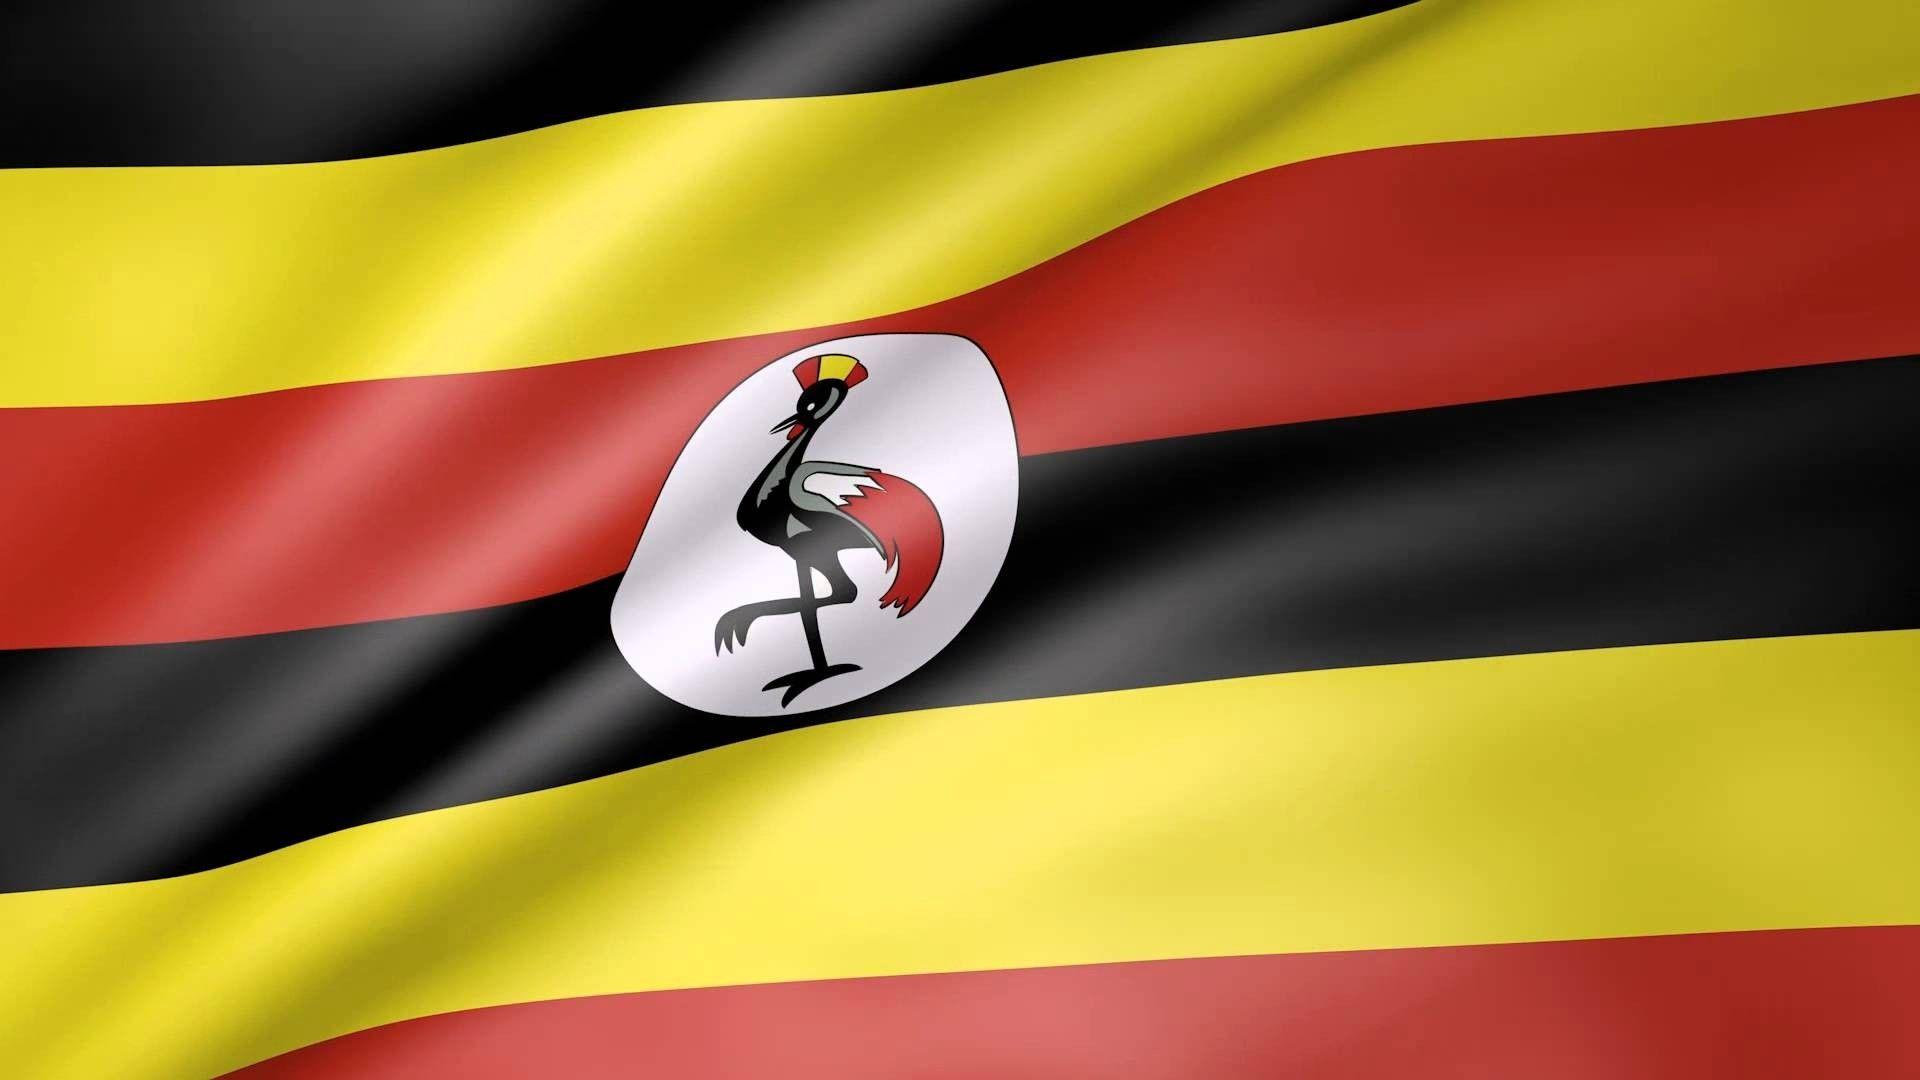 Flag of Uganda wallpaper. Flags wallpaper. Uganda